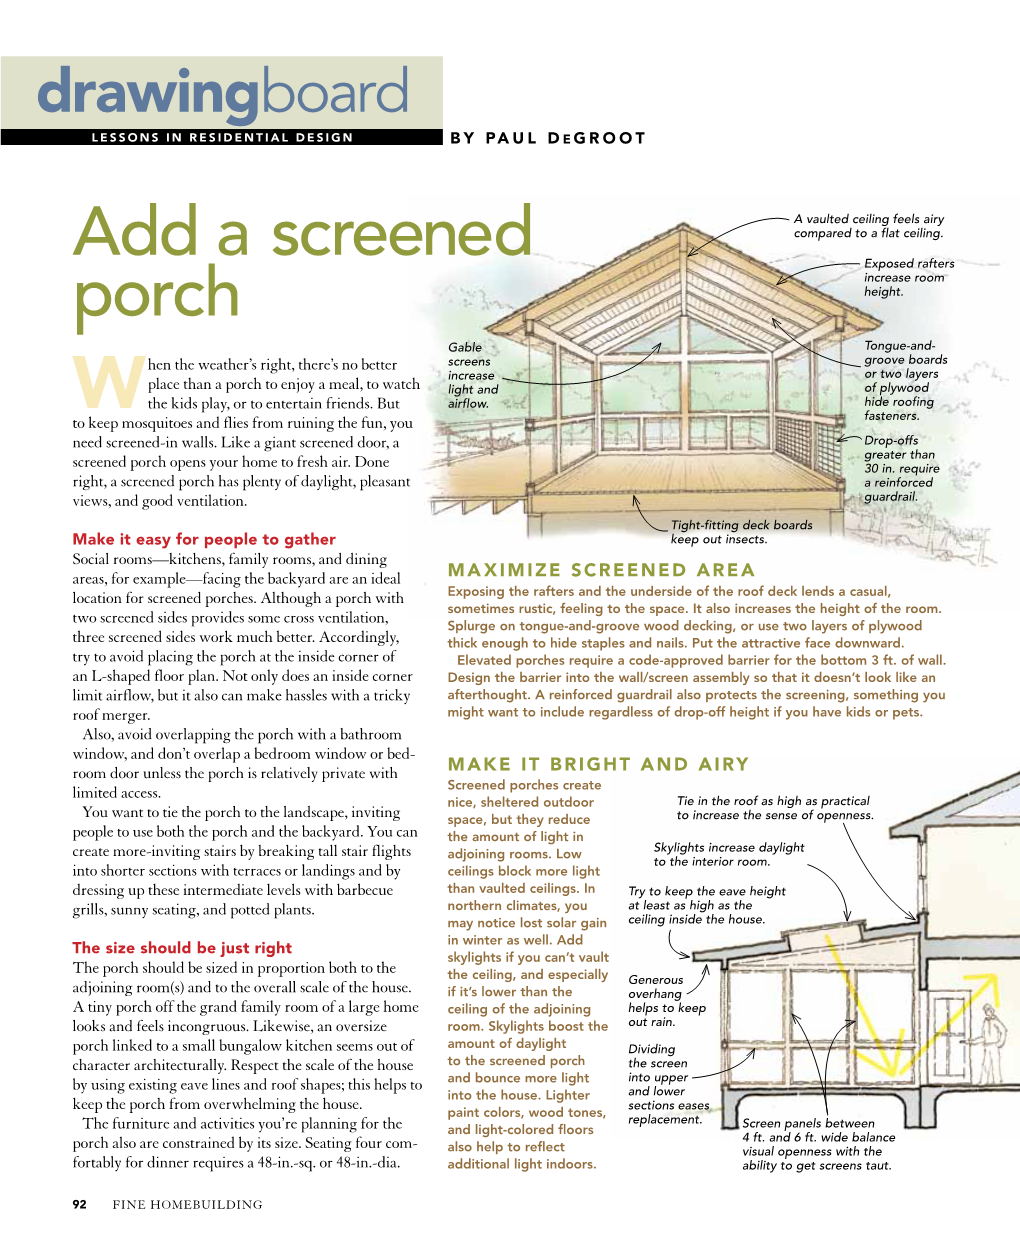 Add a Screened Porch